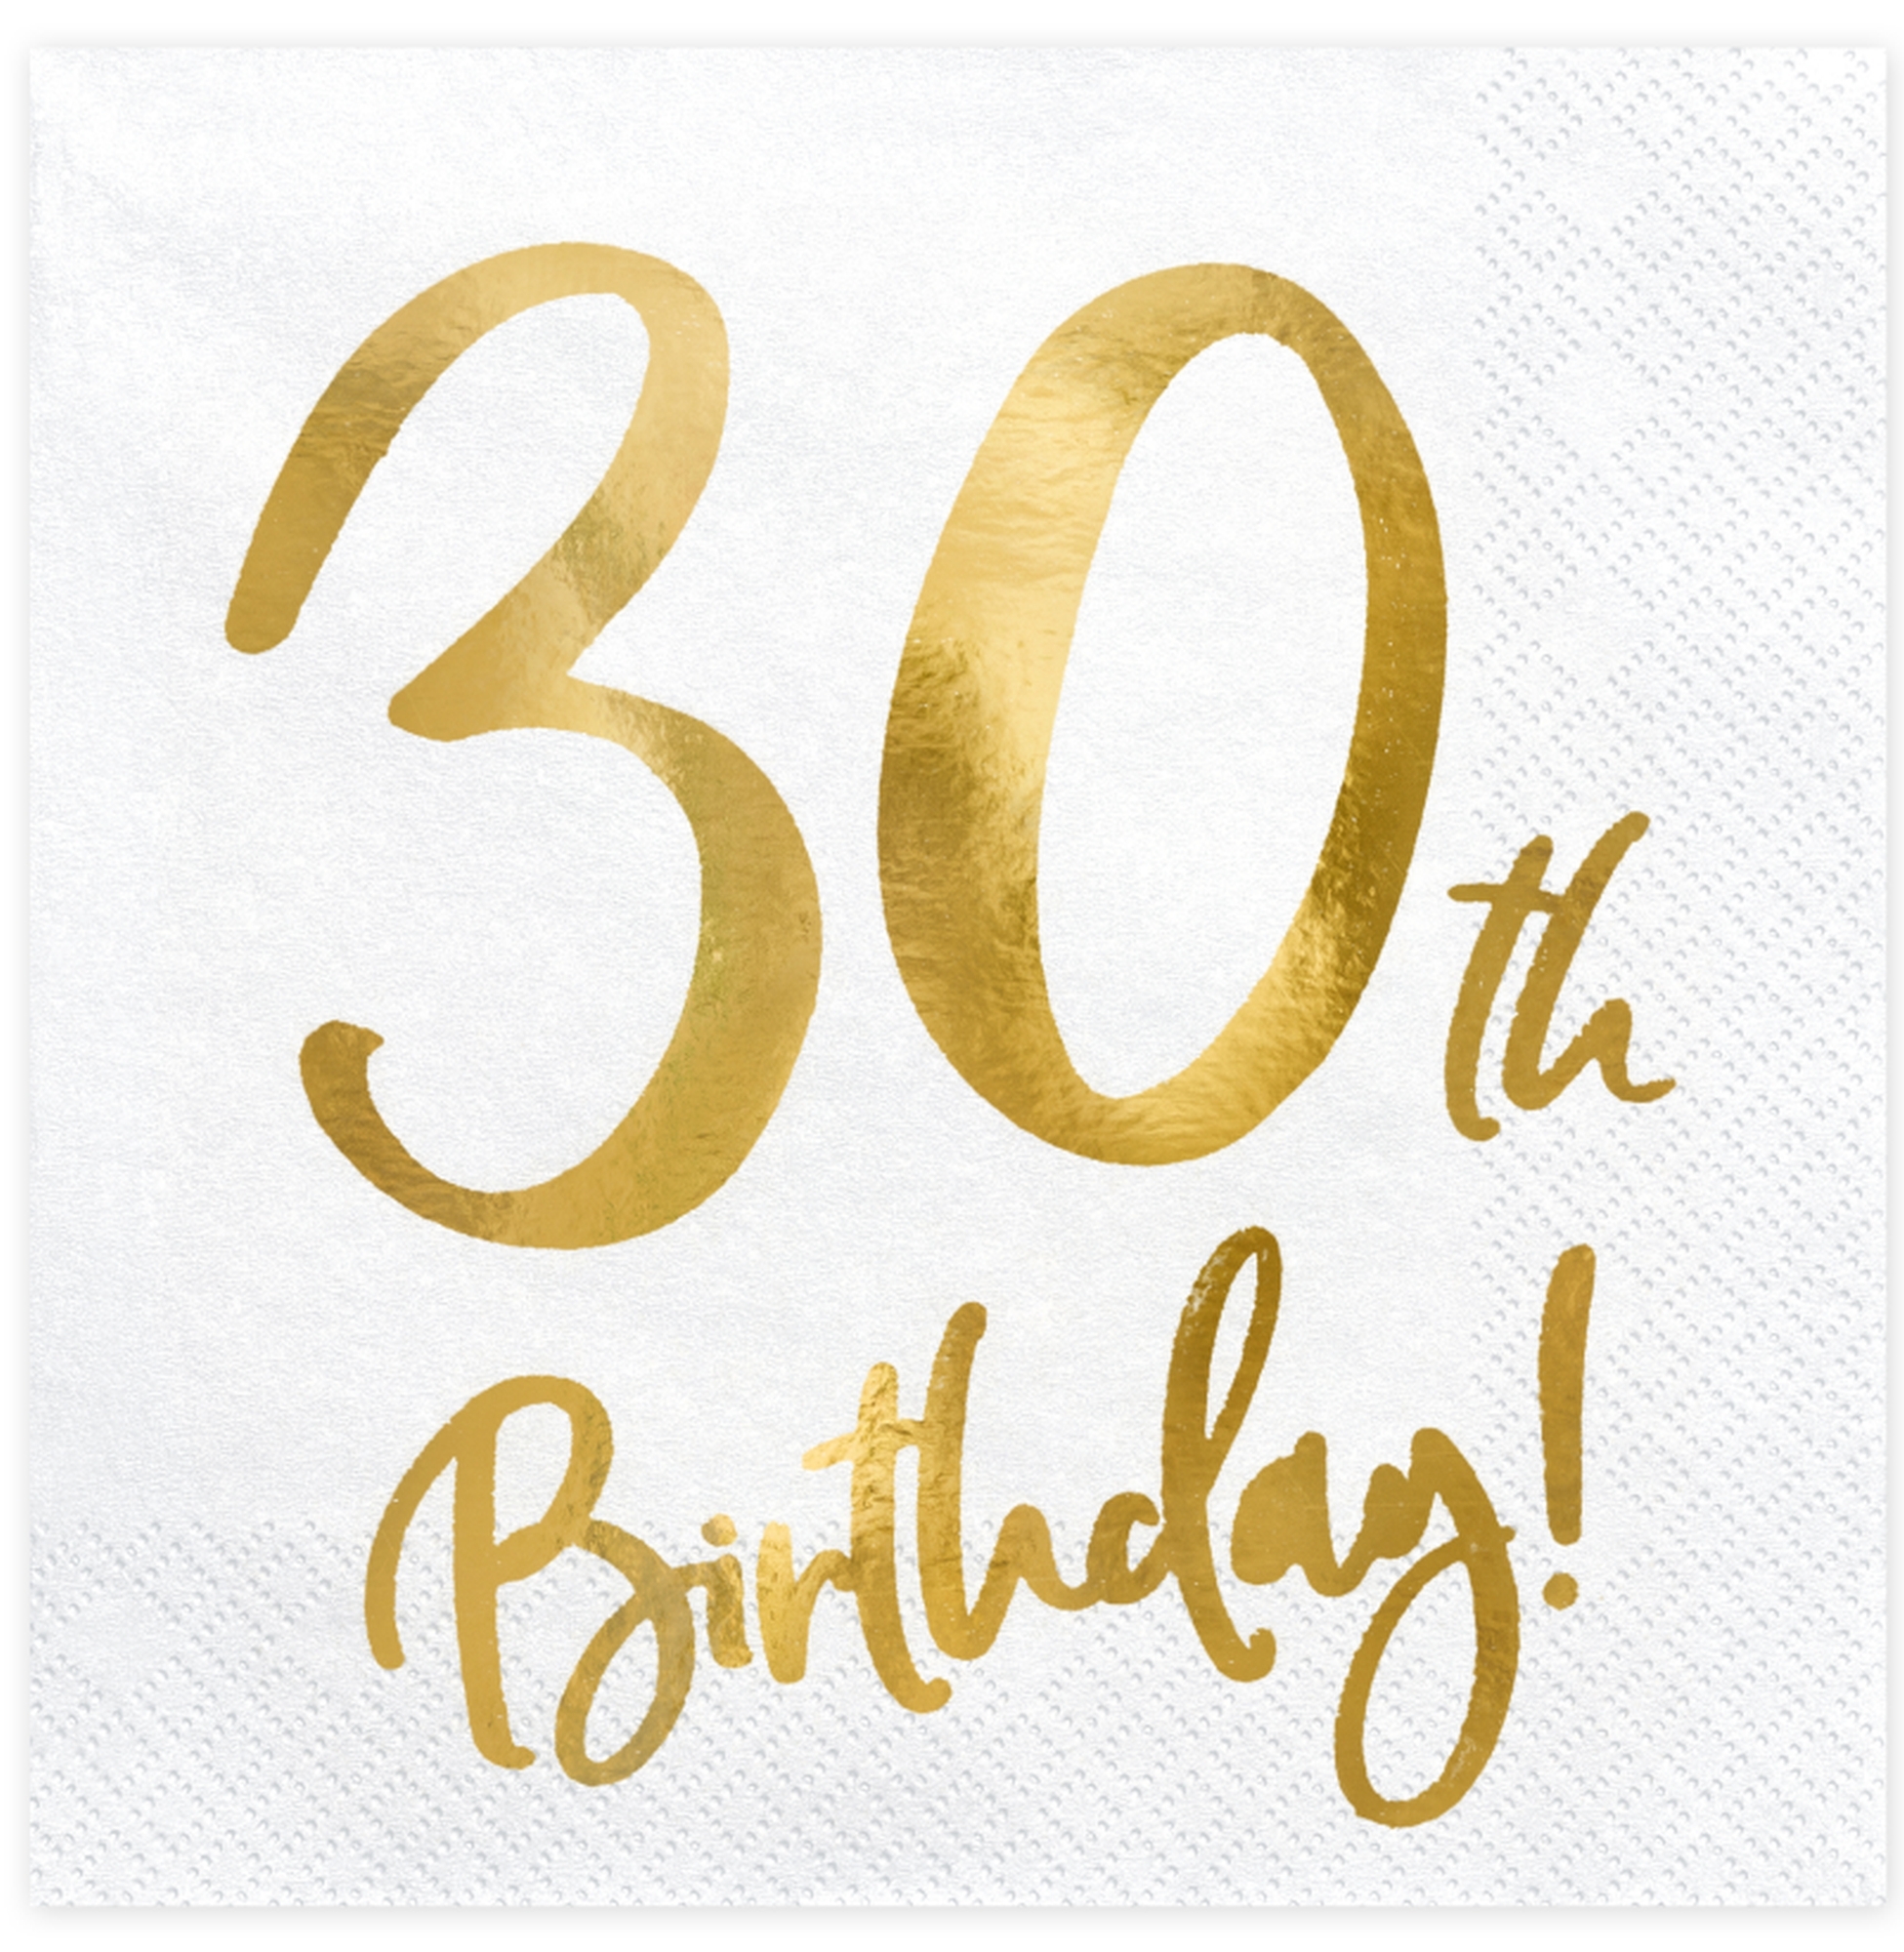 20 Servietten - 30th Birthday - Weiß / Gold